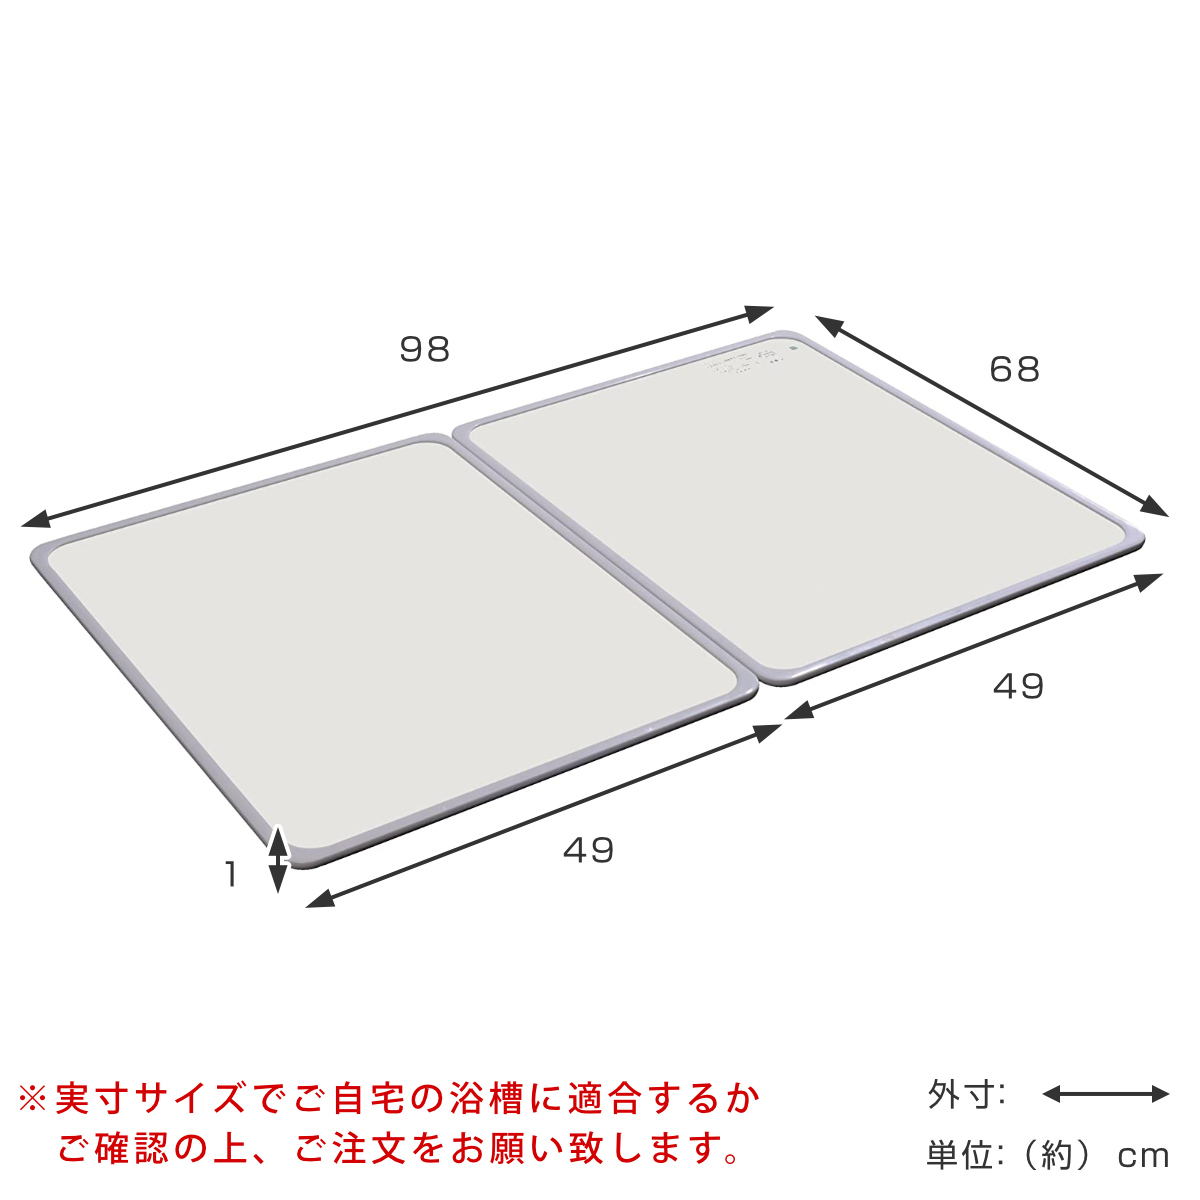 特典付き 抗菌 風呂ふた 組み合わせ 70×100cm 用 M10 2枚組 日本製